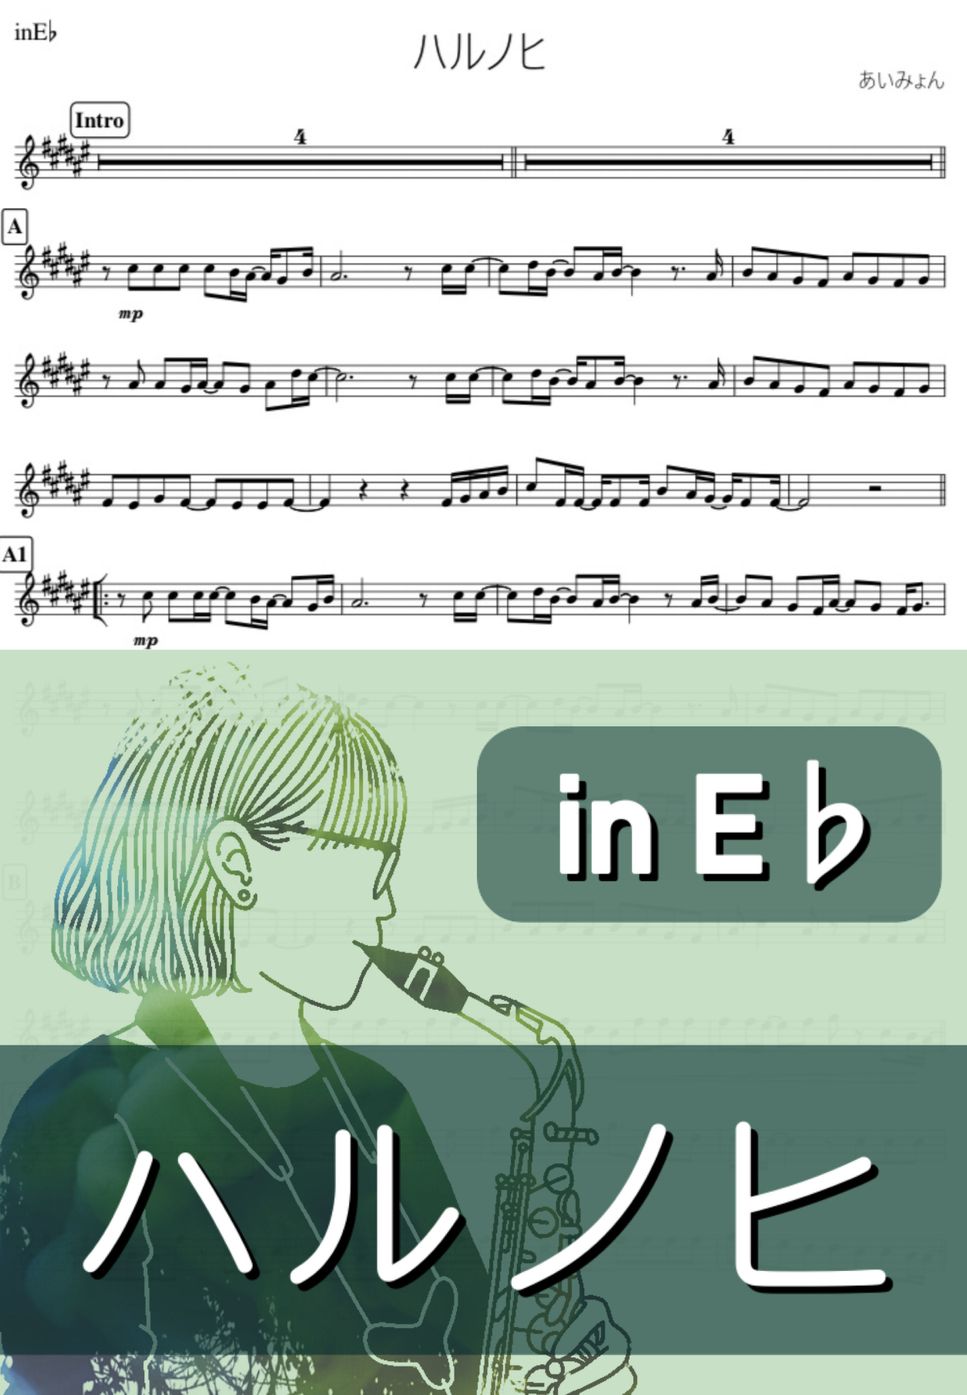 あいみょん - ハルノヒ (E♭) by kanamusic